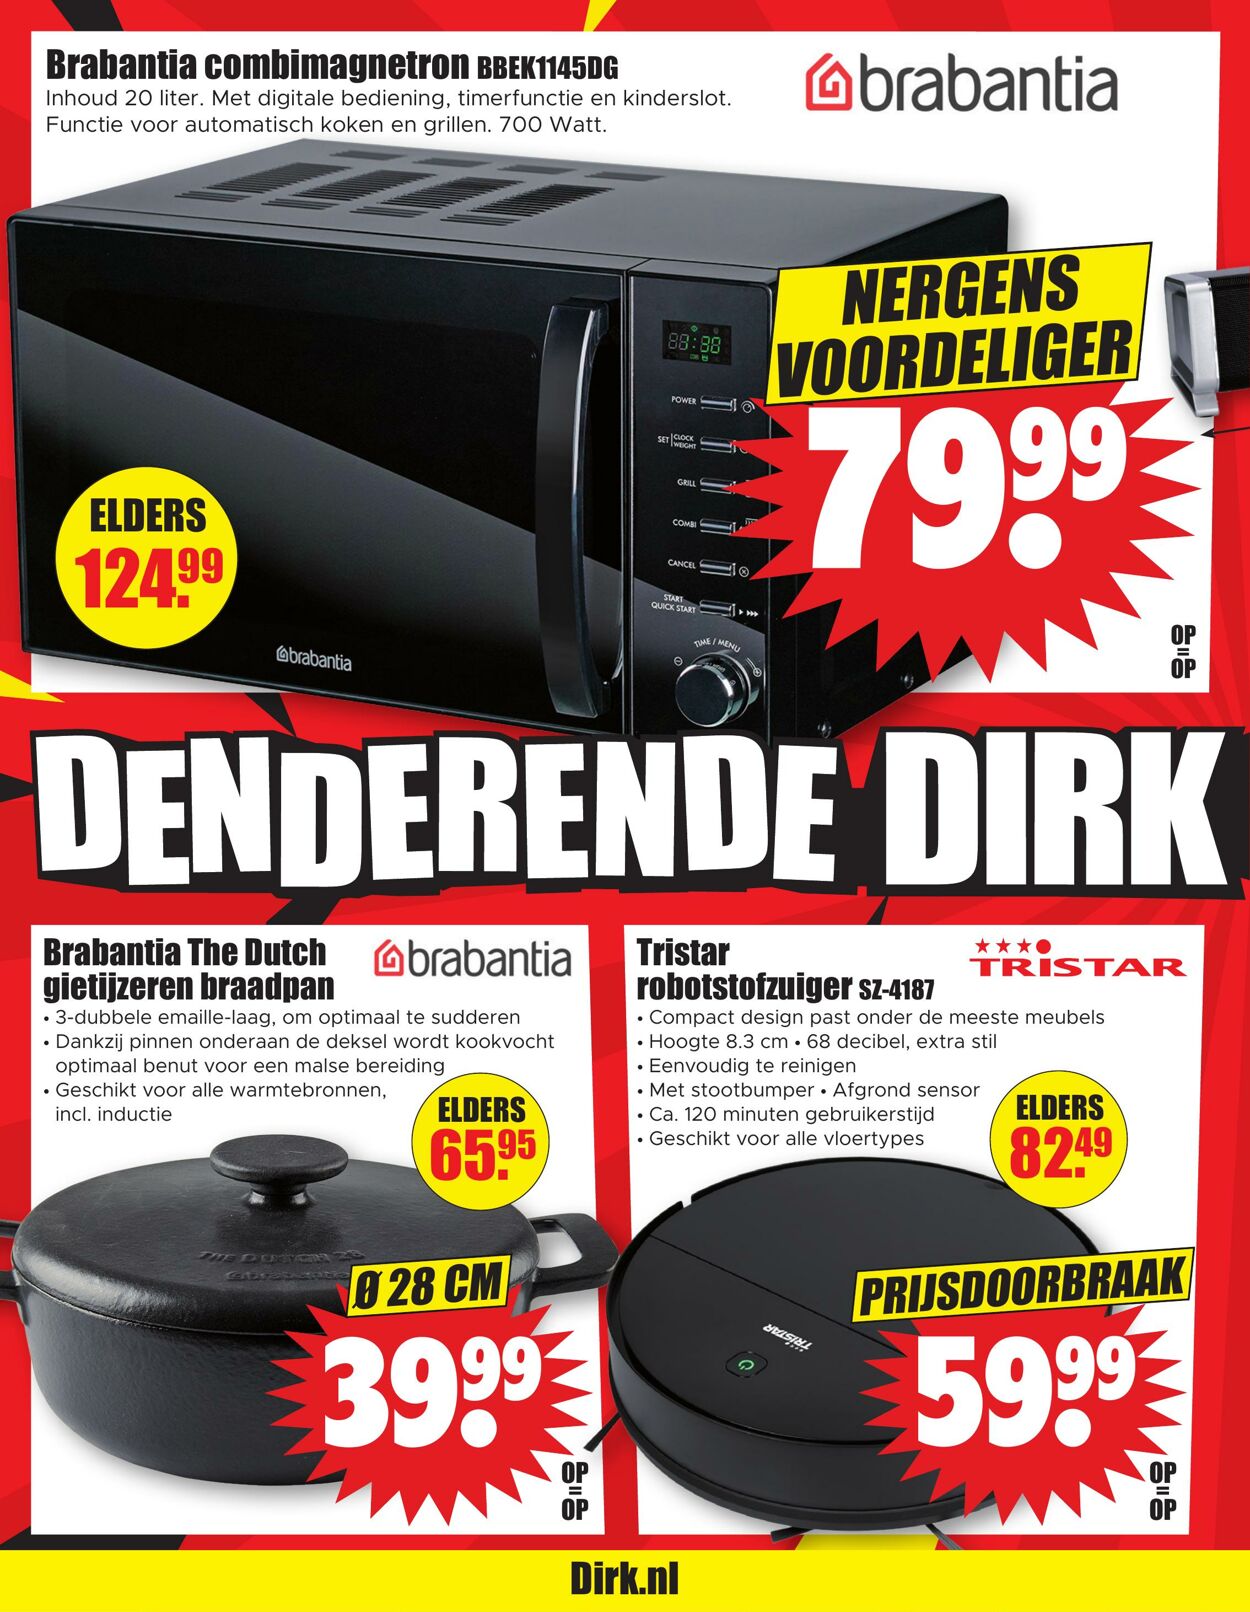 Folder Dirk 25.01.2023 - 31.01.2023